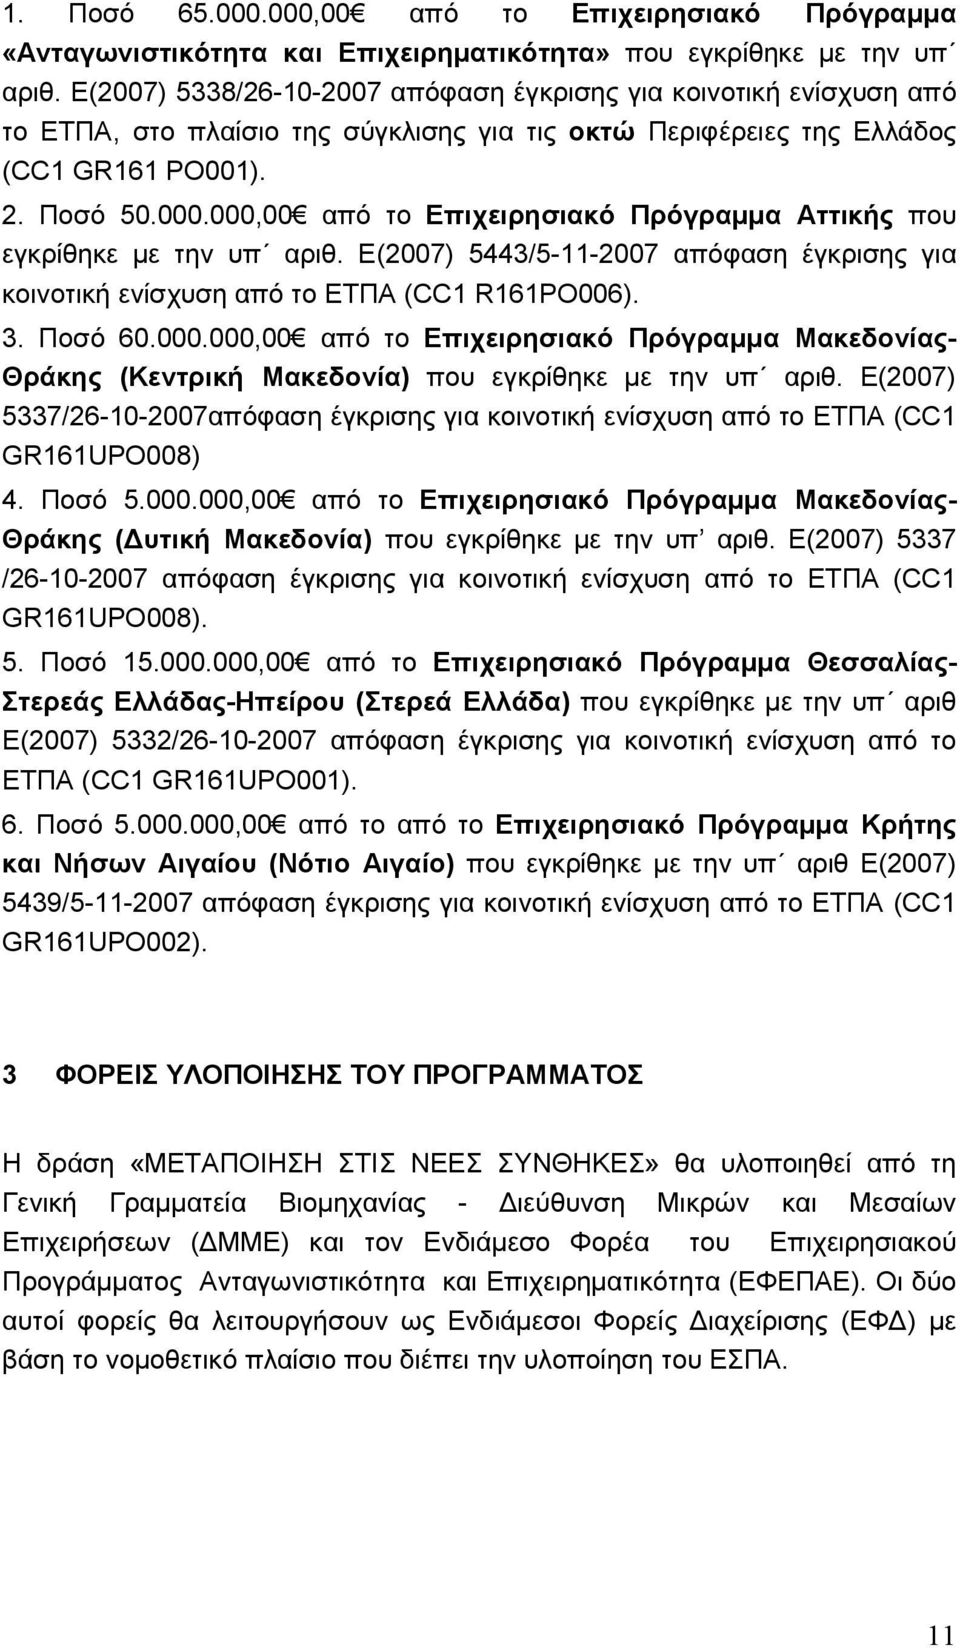 000,00 από το Επιχειρησιακό Πρόγραµµα Αττικής που εγκρίθηκε µε την υπ αριθ. Ε(2007) 5443/5-11-2007 απόφαση έγκρισης για κοινοτική ενίσχυση από το ΕΤΠΑ (CC1 R161PO006). 3. Ποσό 60.000.000,00 από το Επιχειρησιακό Πρόγραµµα Μακεδονίας- Θράκης (Κεντρική Μακεδονία) που εγκρίθηκε µε την υπ αριθ.